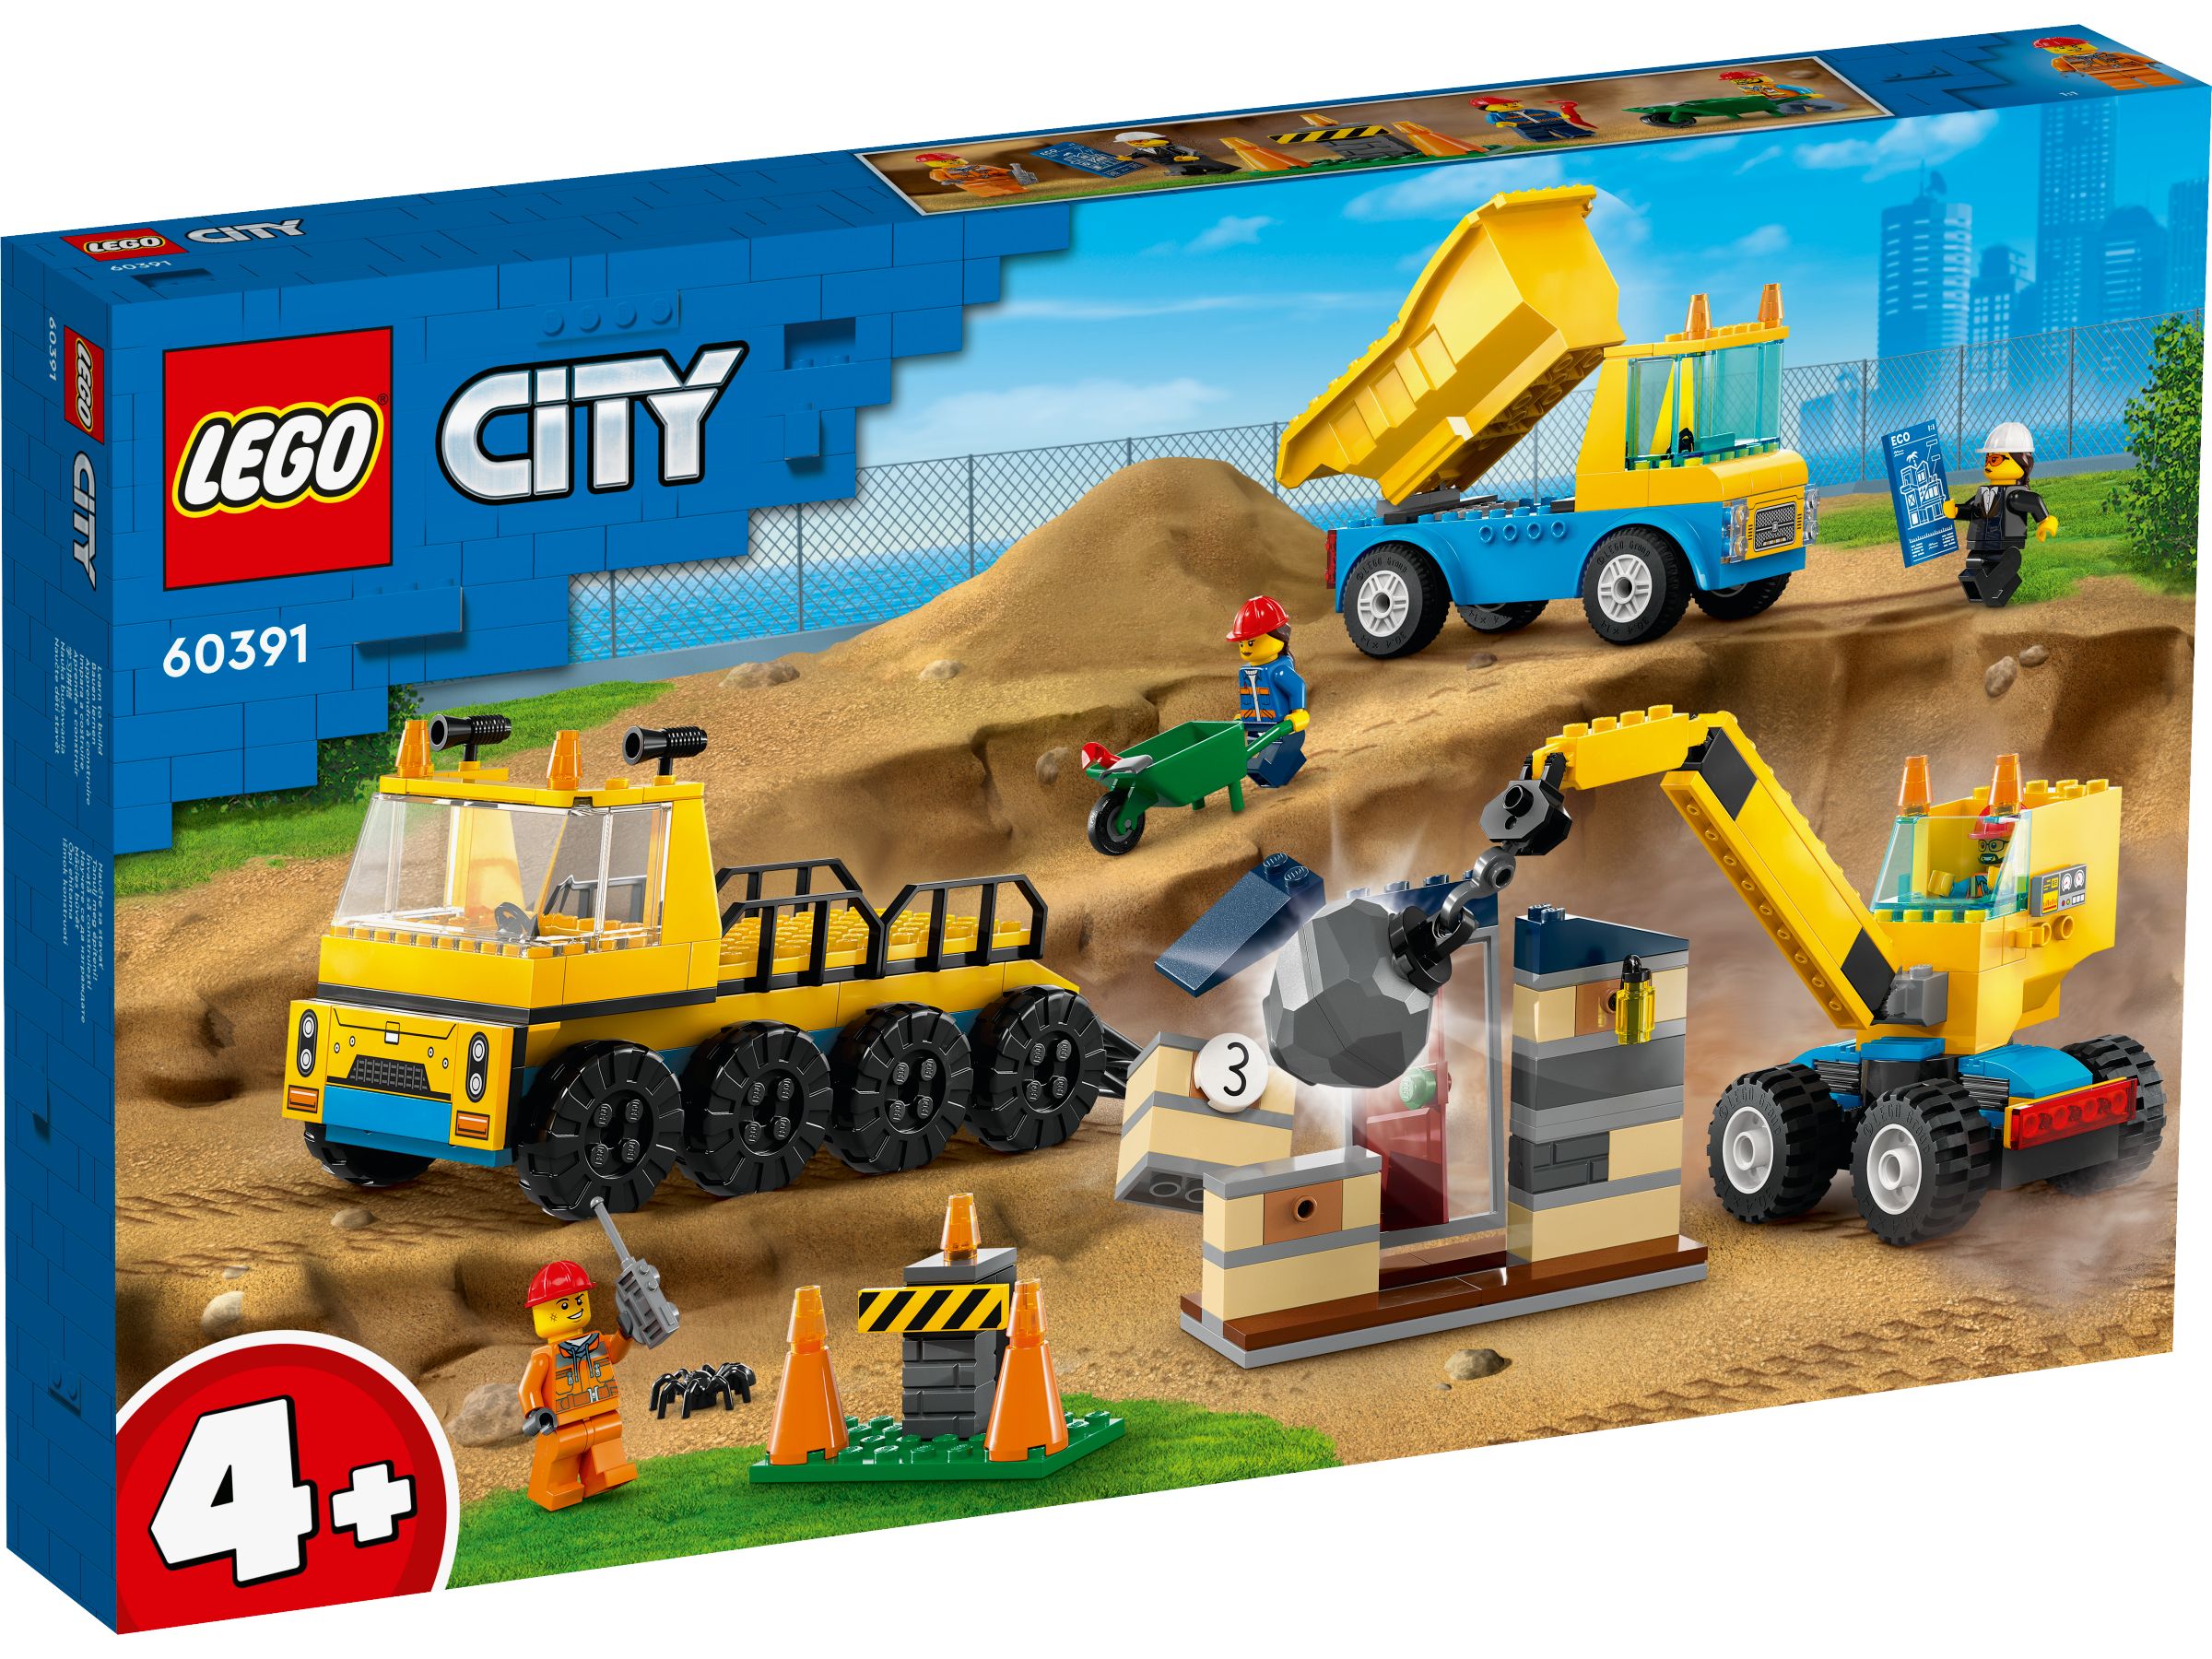 LEGO City 60391 Baufahrzeuge und Kran mit Abrissbirne LEGO_60391_Box1_v29.jpg